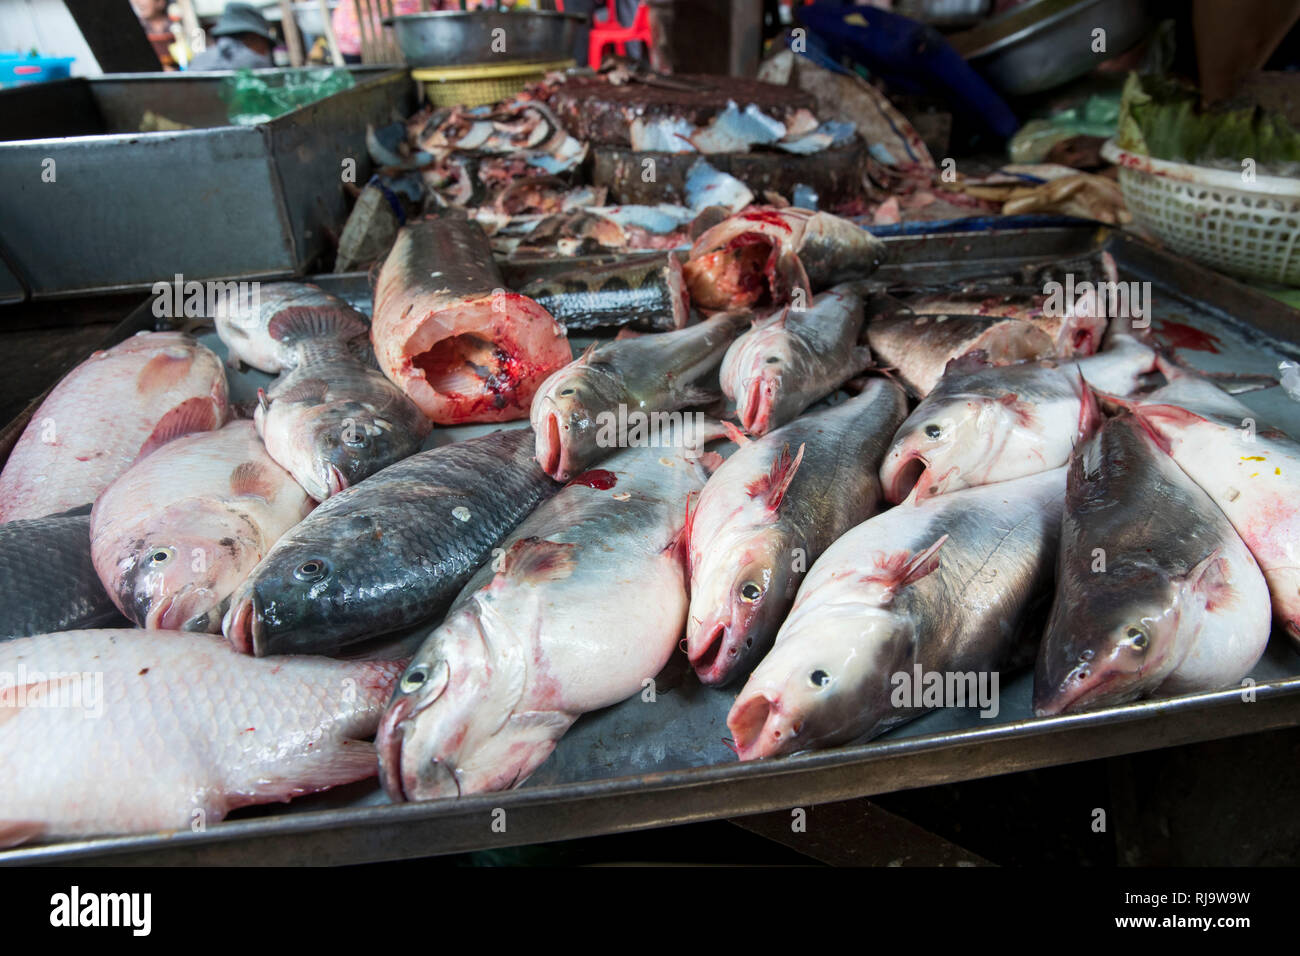 Kambodscha, Phnom Penh, Kandal Market, Schneidetisch eine Fischhändlers, Markt der Armen, hier gibt es alles, Lebensmittel, Werkzeug und Ersatzteile s Stock Photo